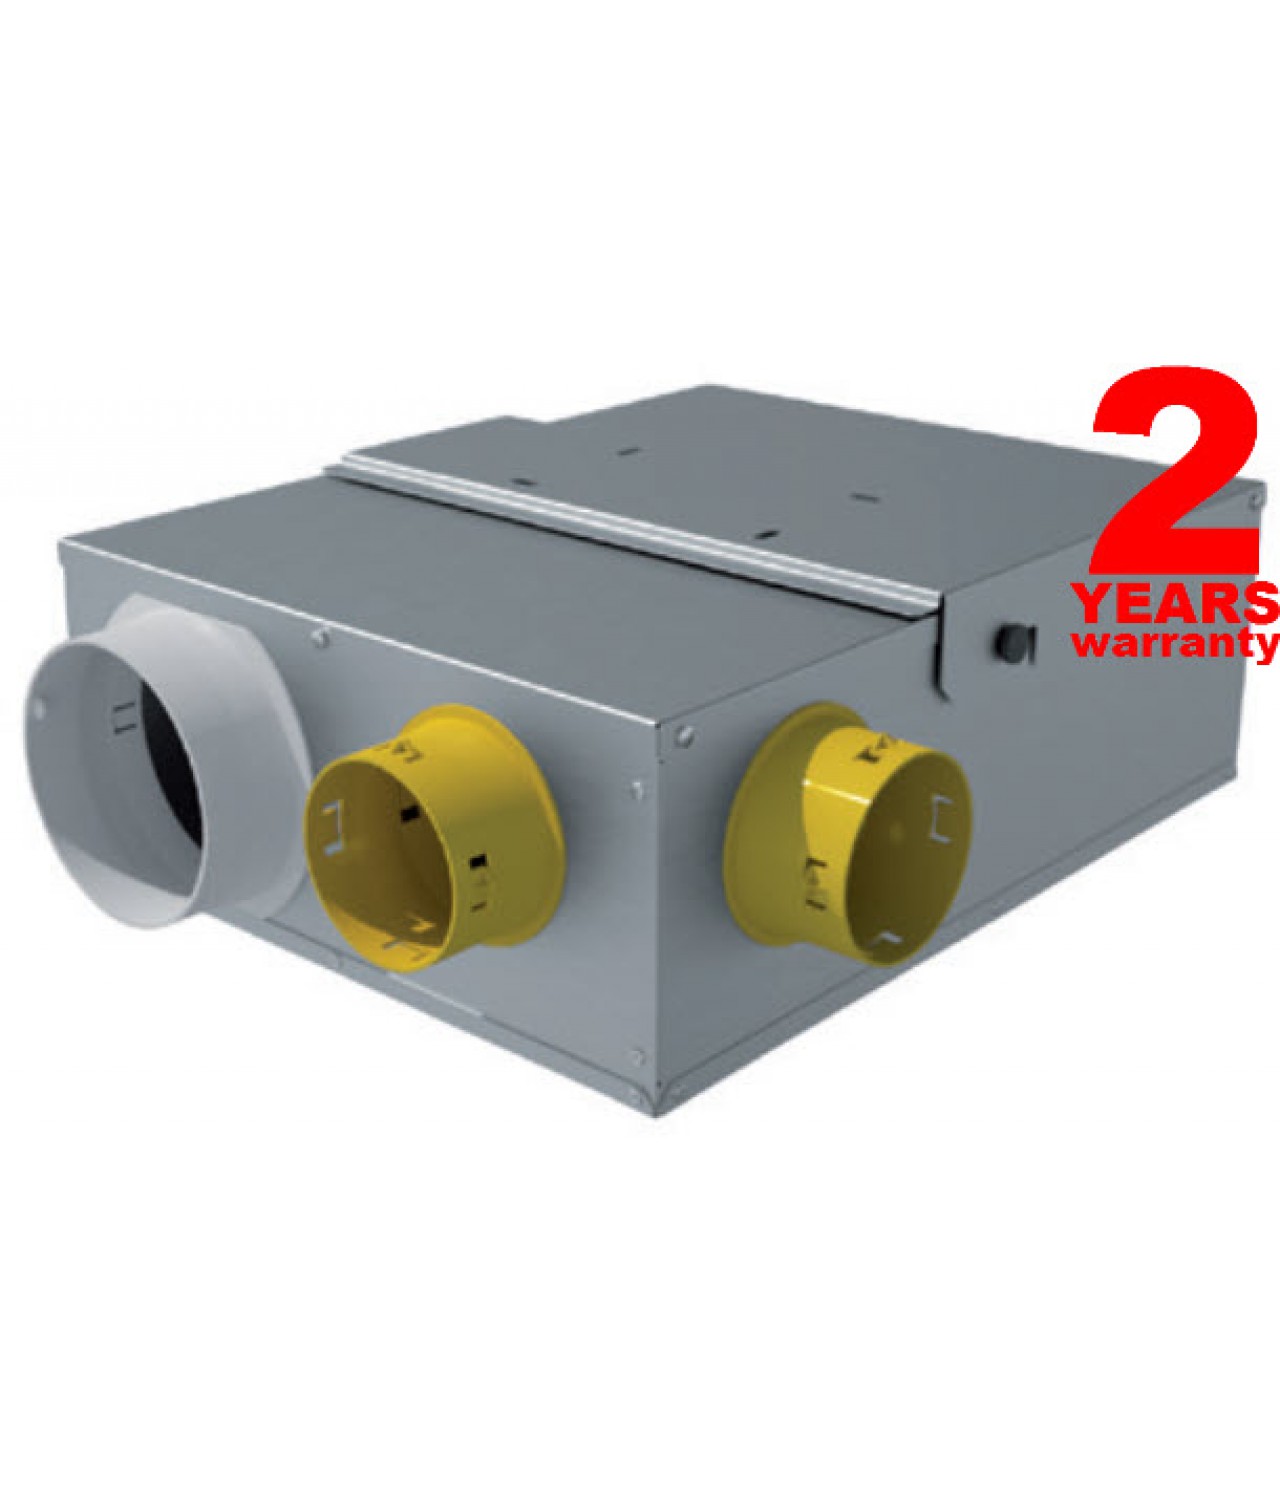 MULTIBOX HY - itin kompaktiški ir tylūs išcentriniai kanaliniai ventiliatoriai su valdymo pultu, drėgmės ir temperatūros jutikliu ≤348-490 m³/h